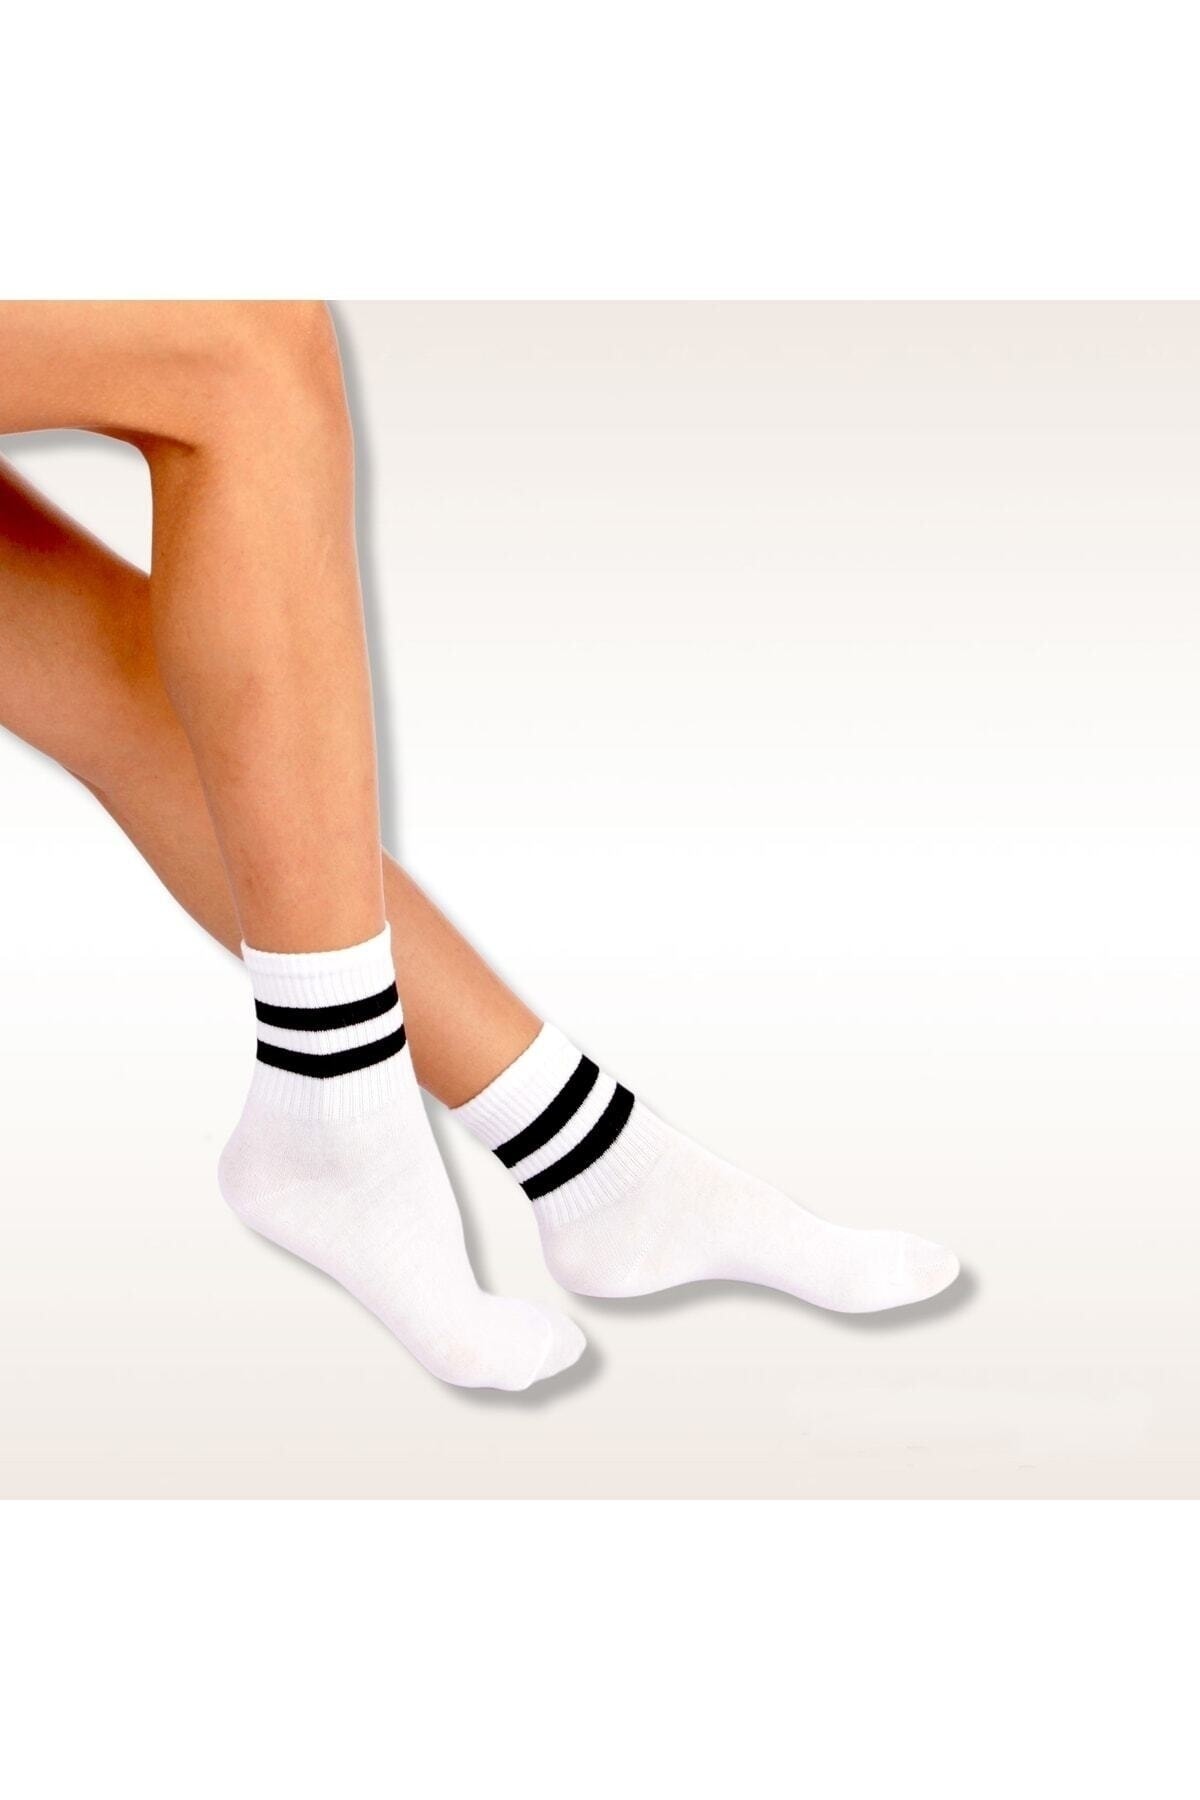 Socks Stores Erkek Kadın Çorap Soket Uzun Corap Renkli Desenli Çoraplar 6 Adet ZN11236